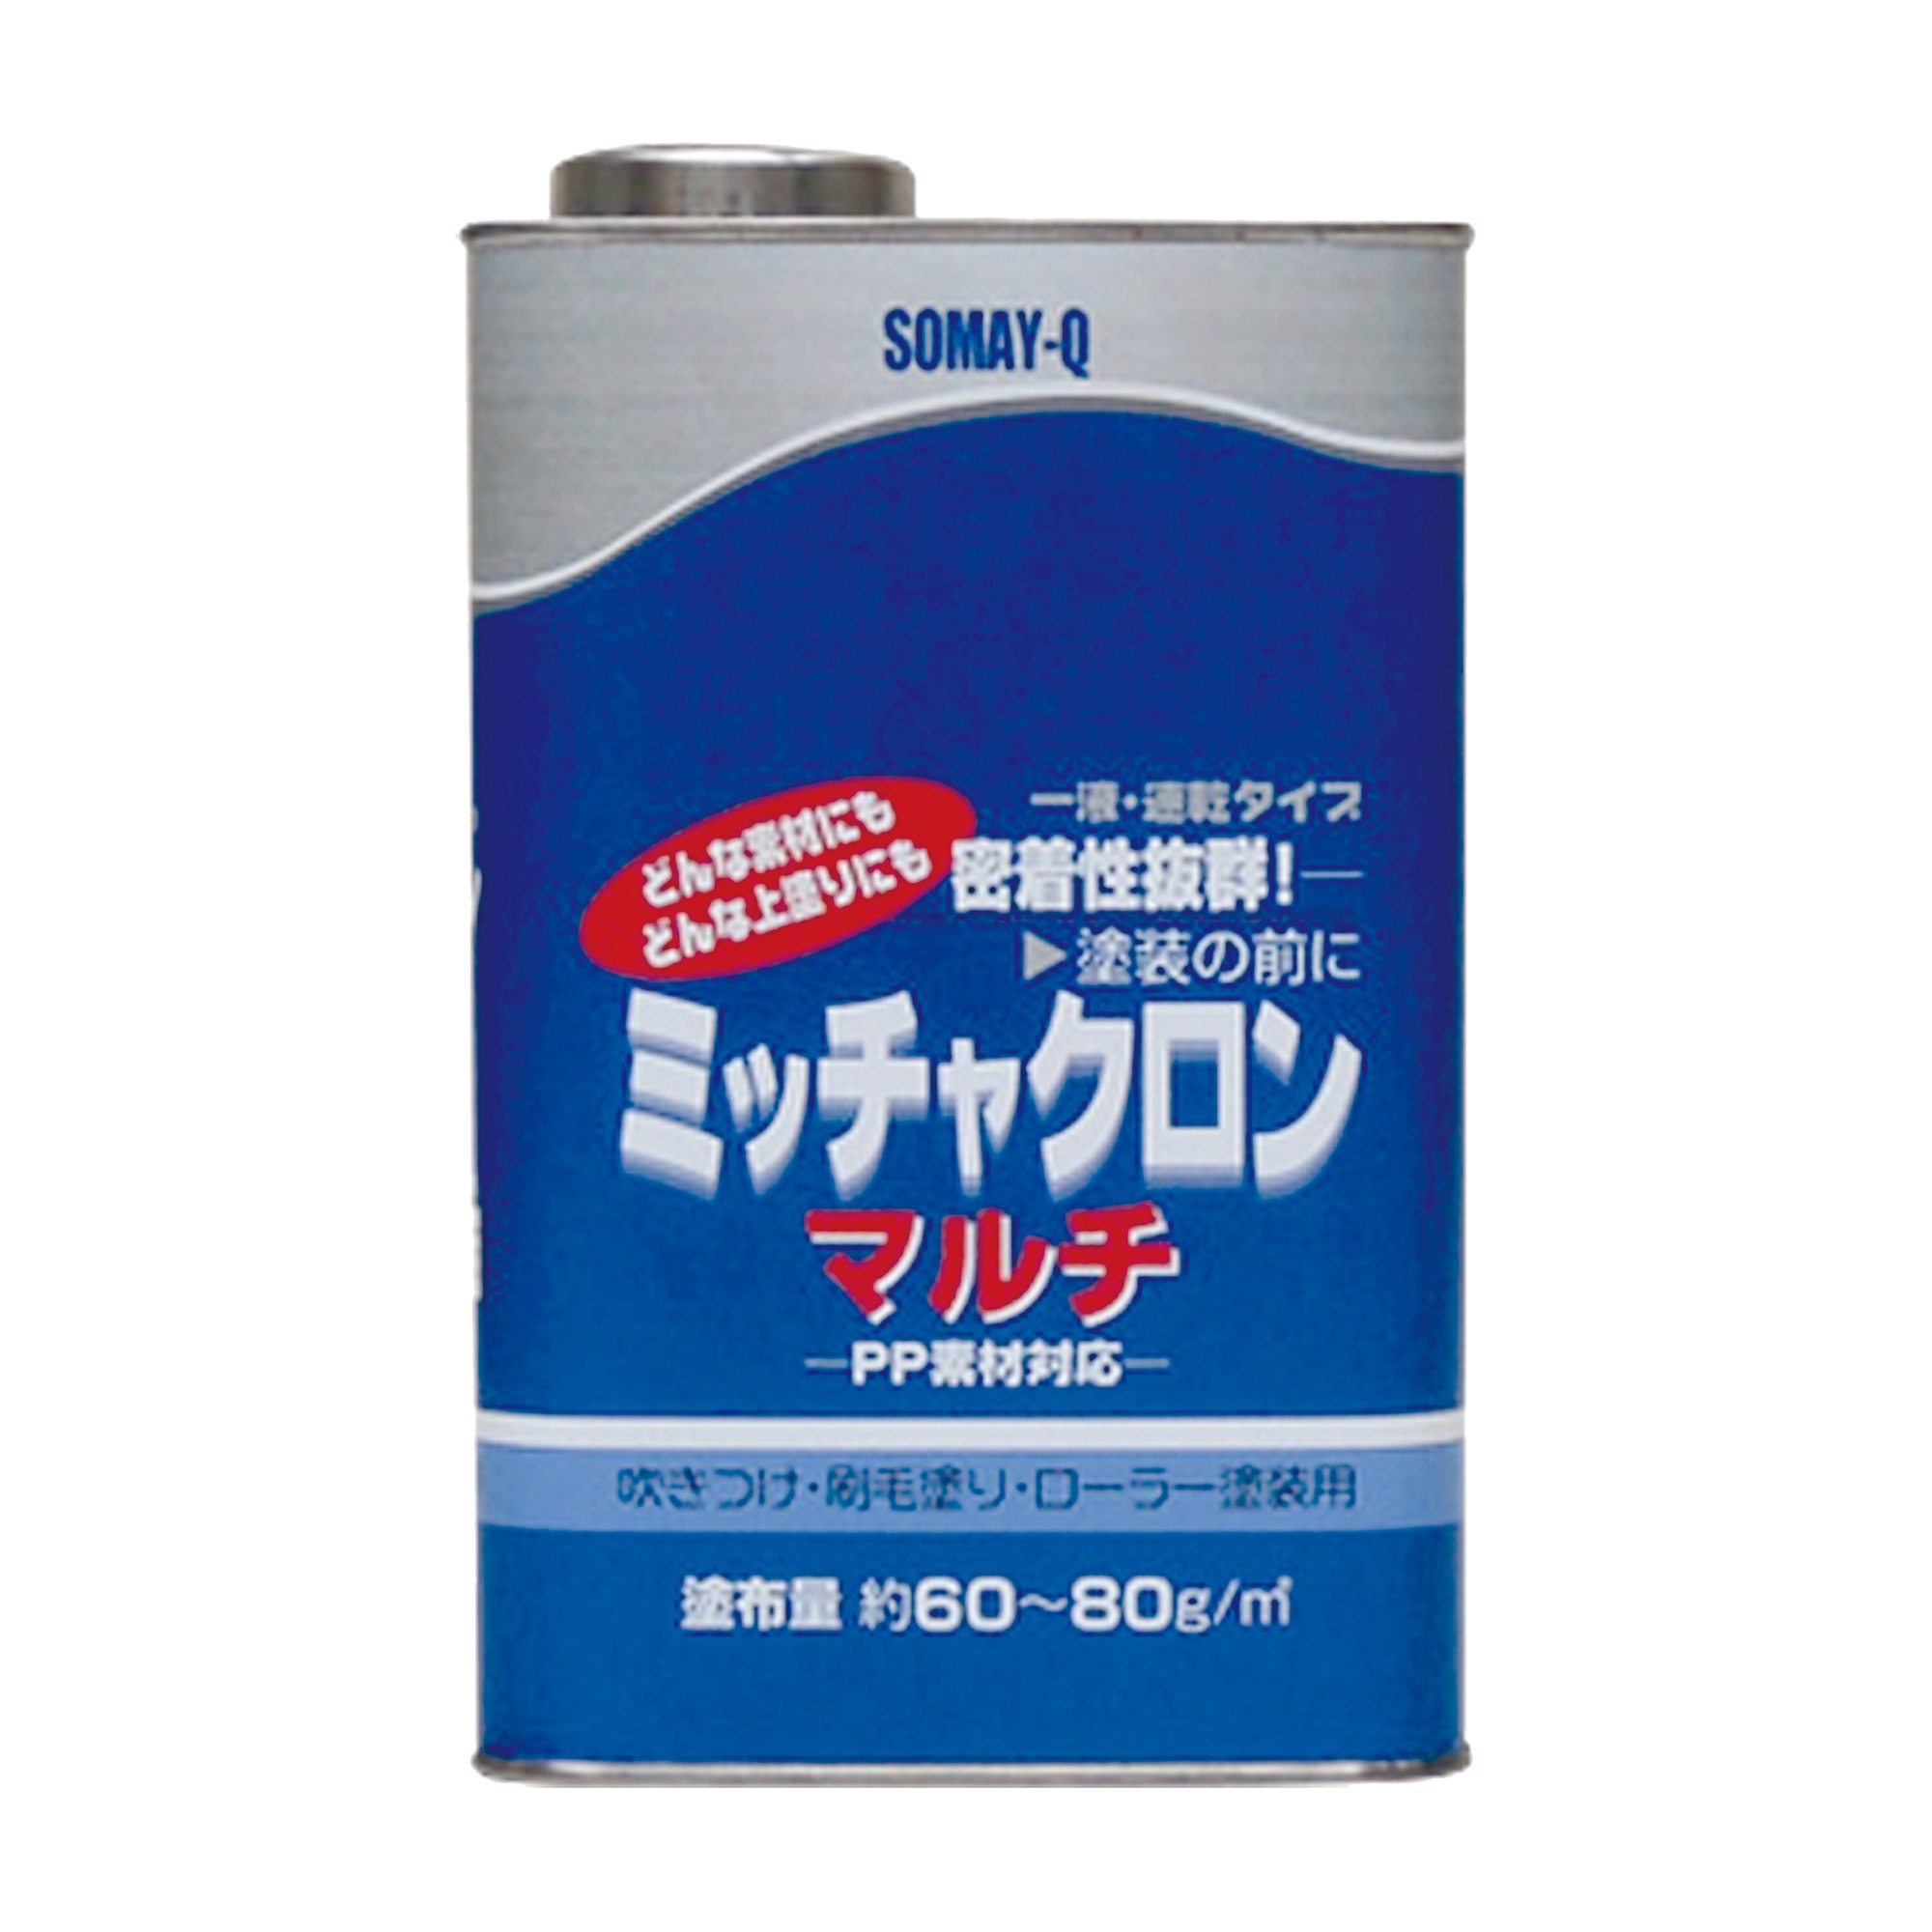 密着プライマー 1L缶 | PT-OT003-02-G021 | その他塗料 | 塗料 | toolbox